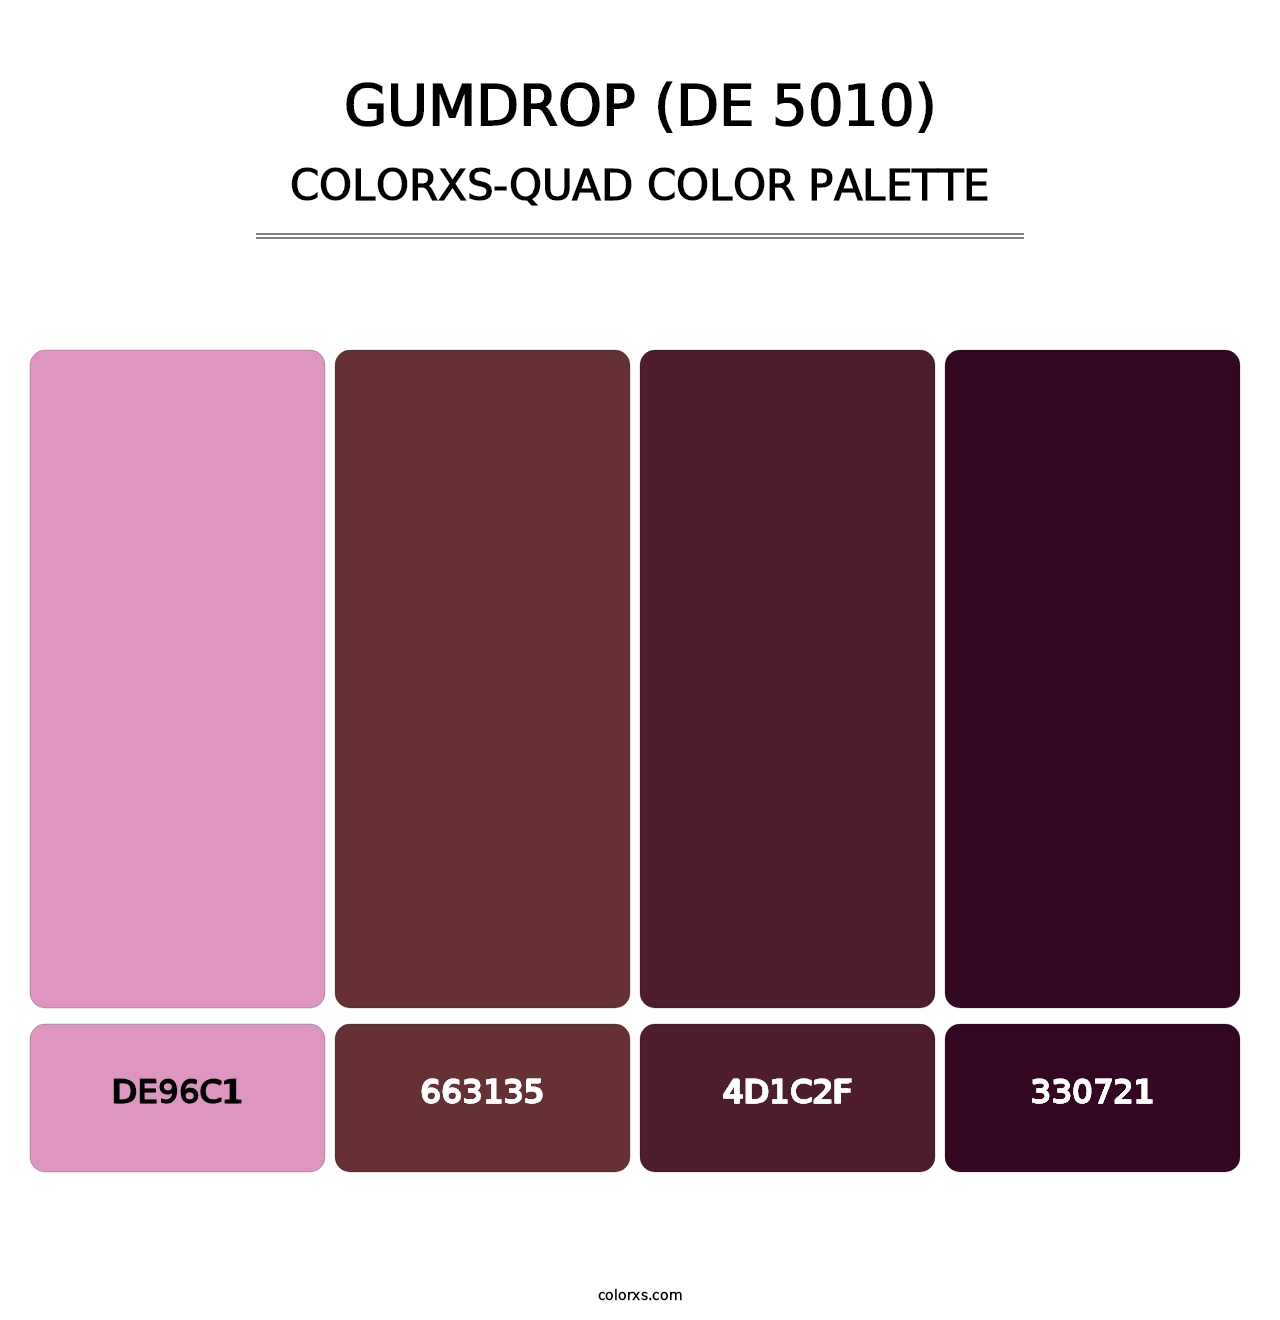 Gumdrop (DE 5010) - Colorxs Quad Palette